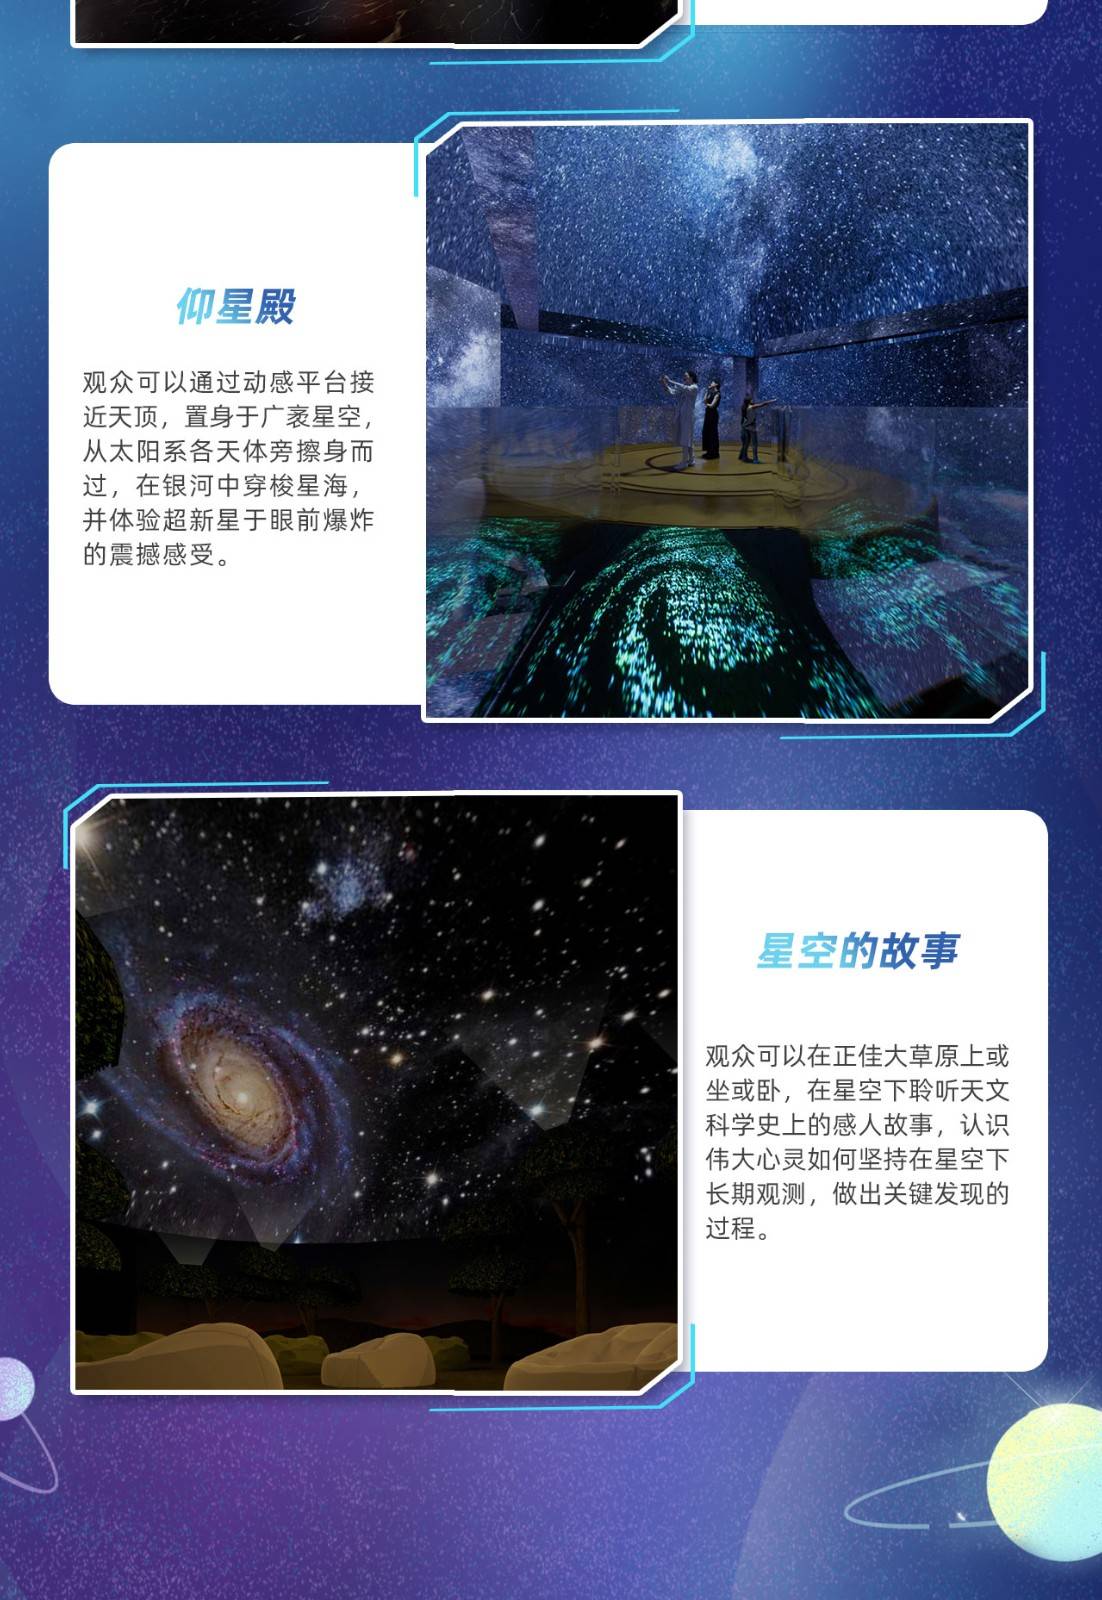 【2023年常规票】 广州正佳科学馆+天文馆联票-家庭套票